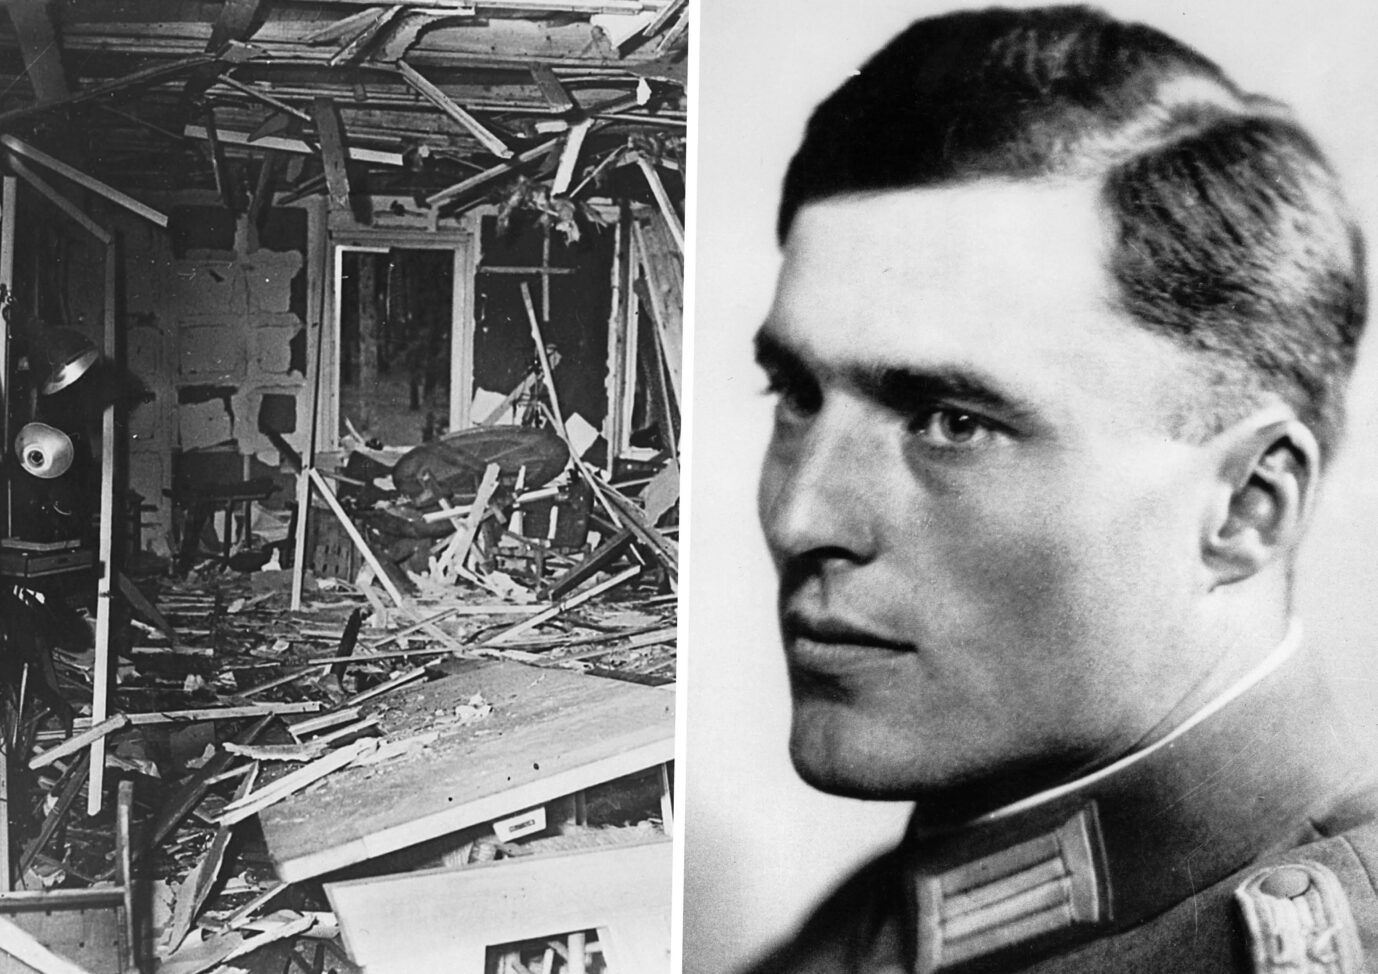 Auf der Collage befinden sich der Putsch des 20. Juli und dessen wichtigste Figur, Claus Schenk Graf von Stauffenberg. (Themenbild)